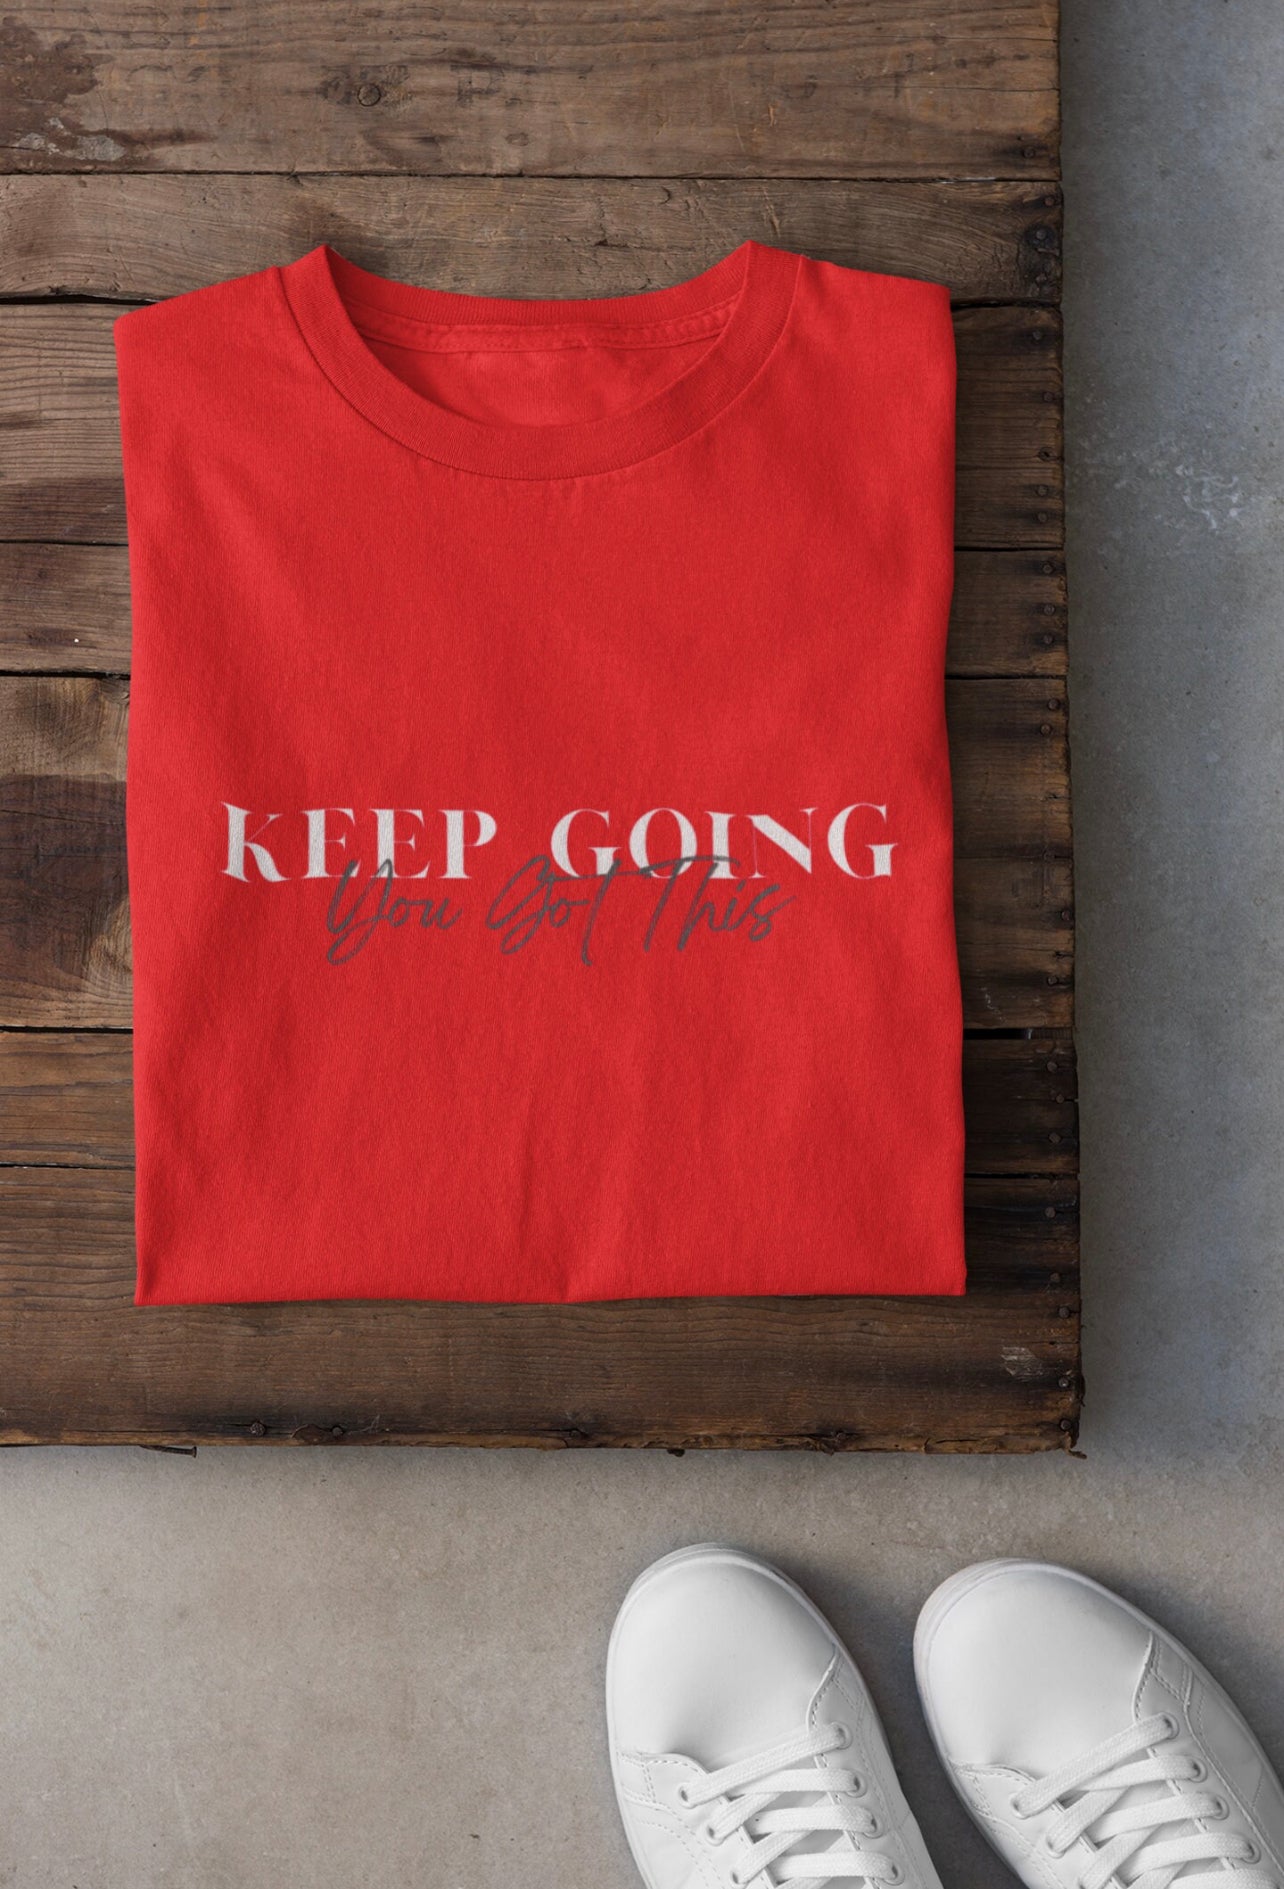 Keep Going You Got This Motivational T-Shirt, Christian Shirt, Inspirational Tee